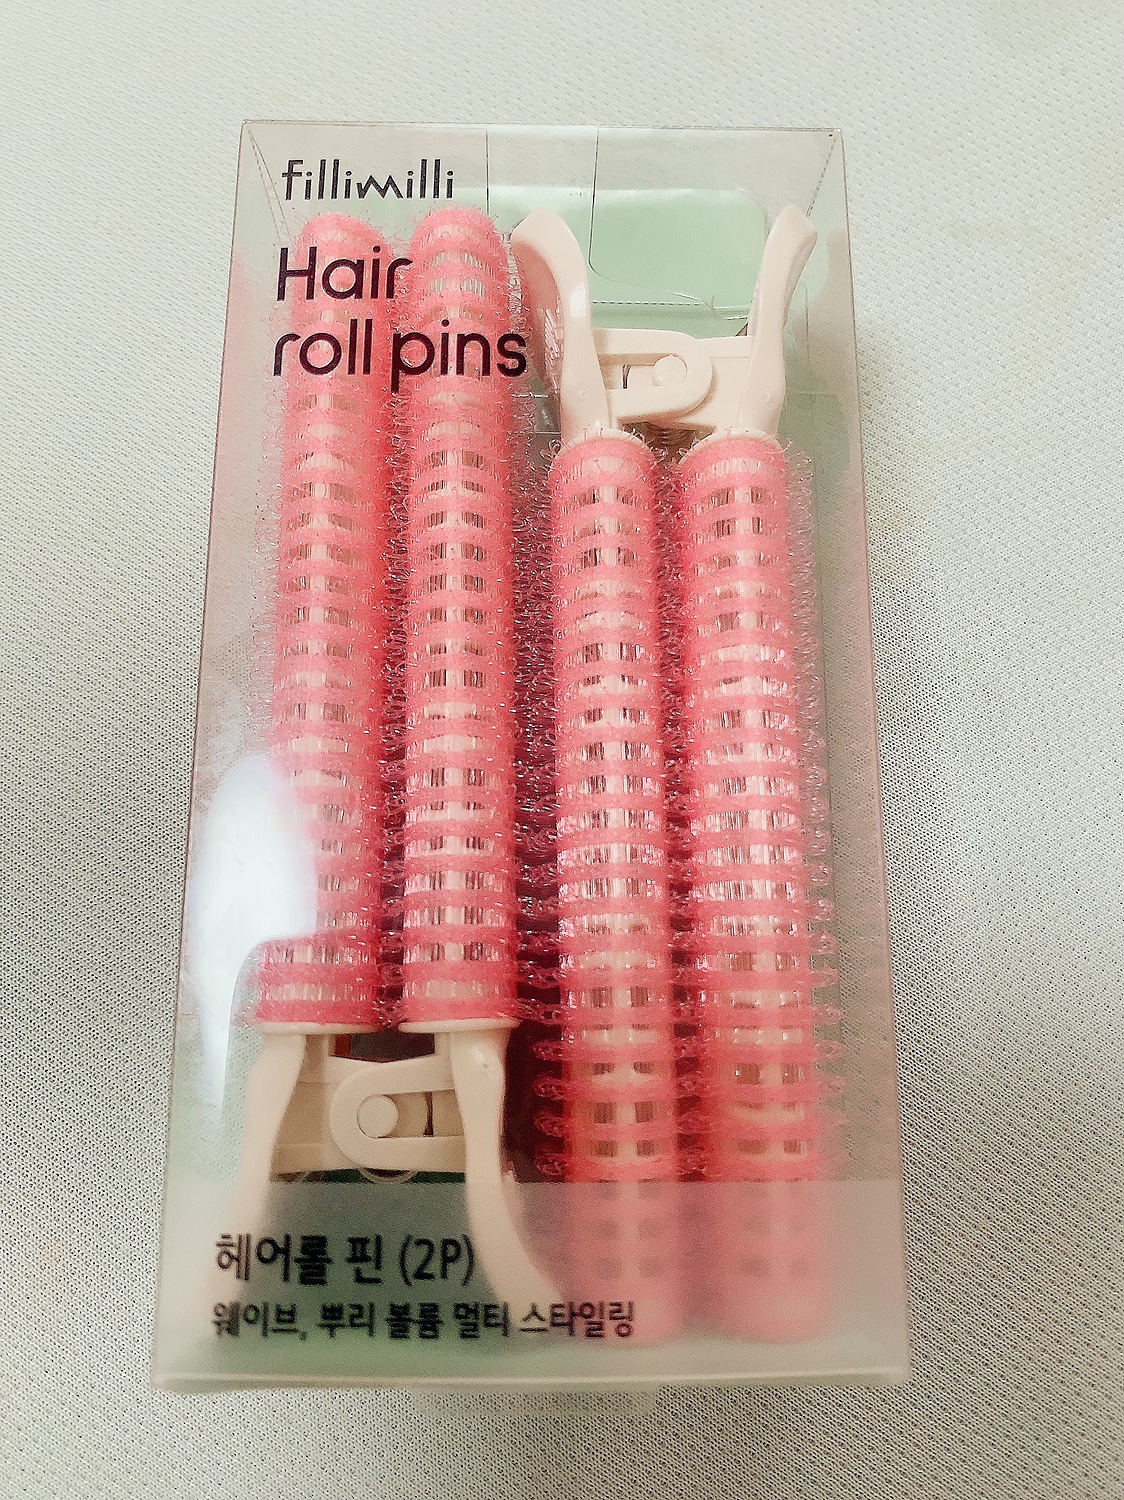 楽天市場】【FilliMilli】ヘアロールピン2P 1個 ヘアロール Hair Roller Pins 髪ロール ヘアボリュームロール 韓国コスメ  オリーブヤング公式 【楽天海外通販】(OLIVEYOUNG 公式楽天市場店) | みんなのレビュー・口コミ